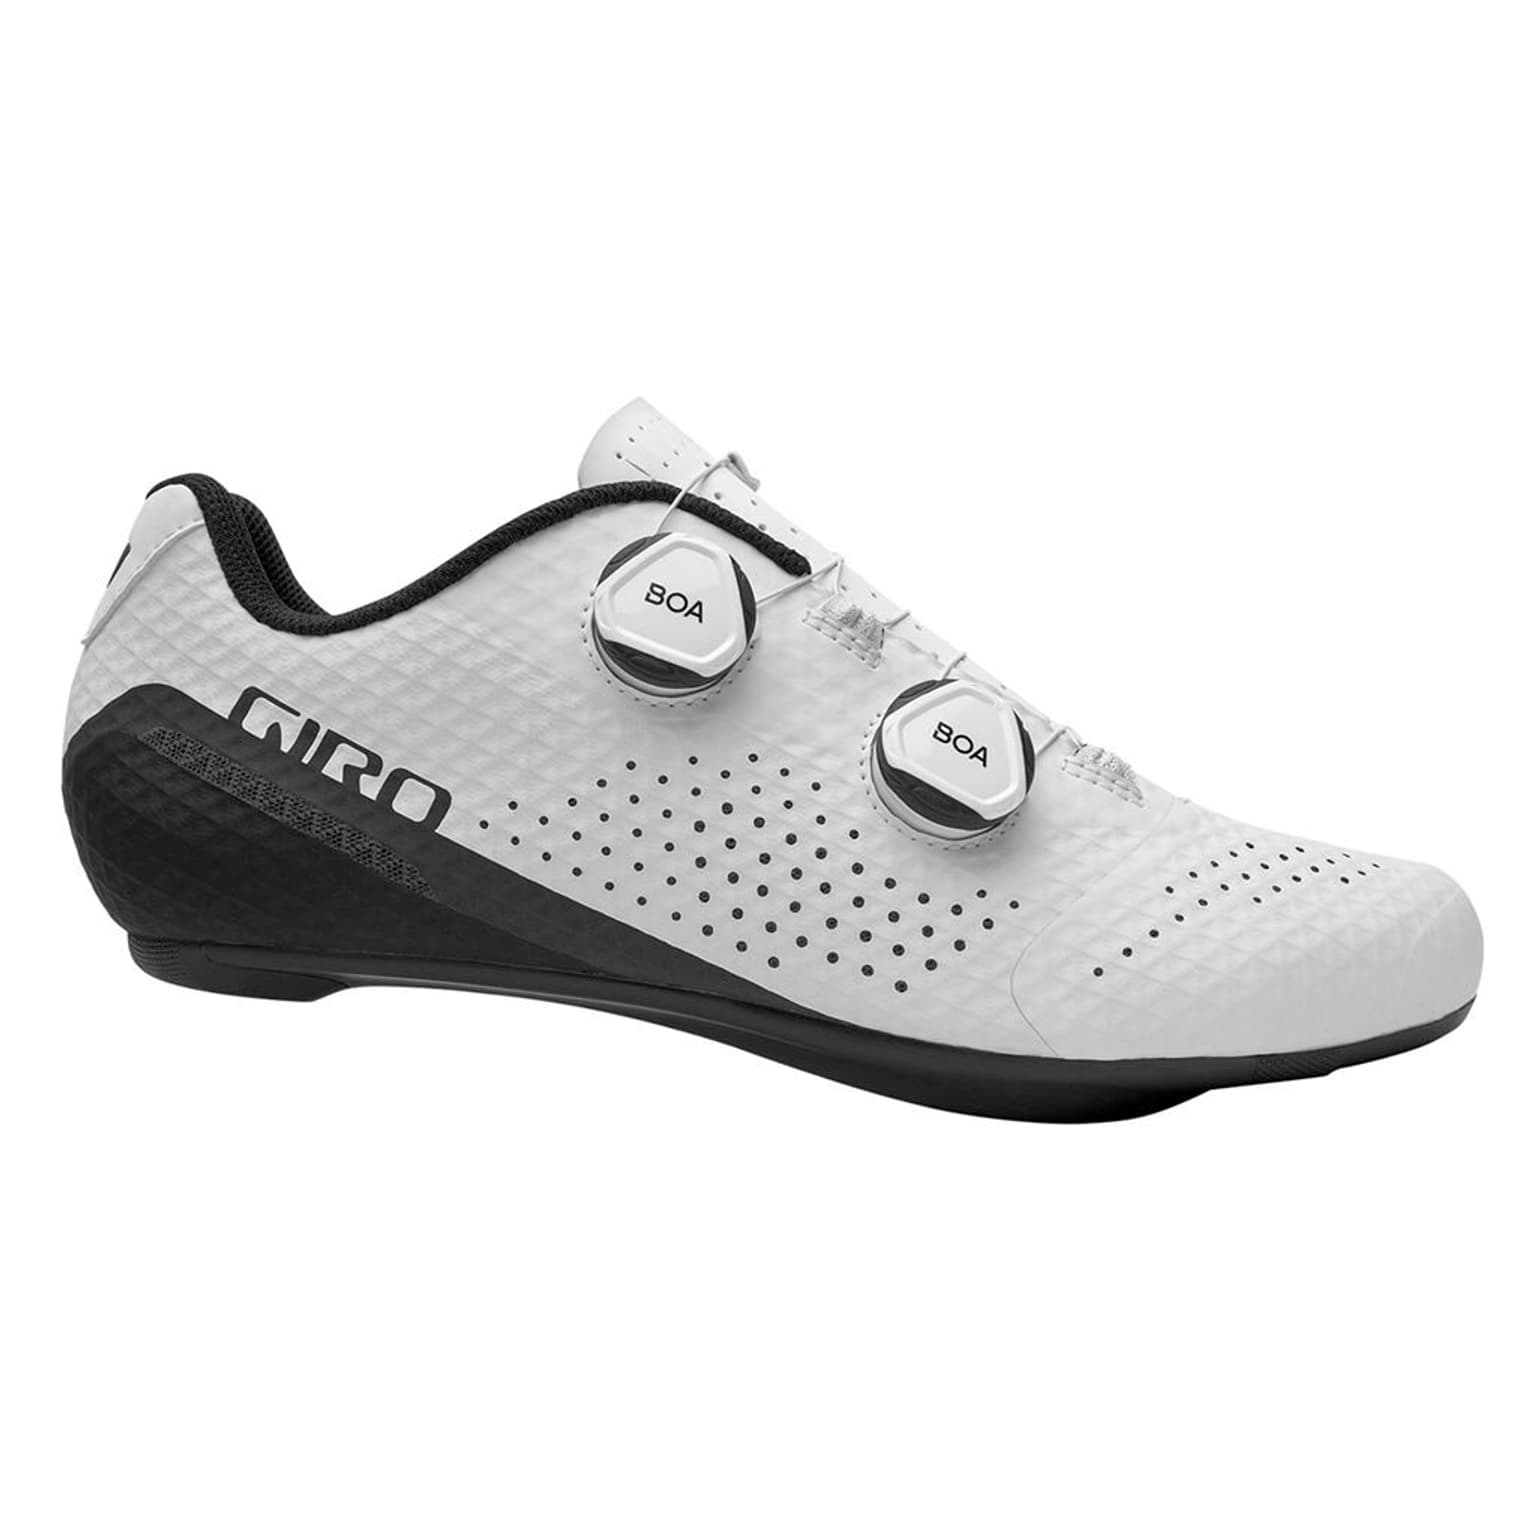 Giro Giro Regime Shoe Chaussures de cyclisme blanc 1